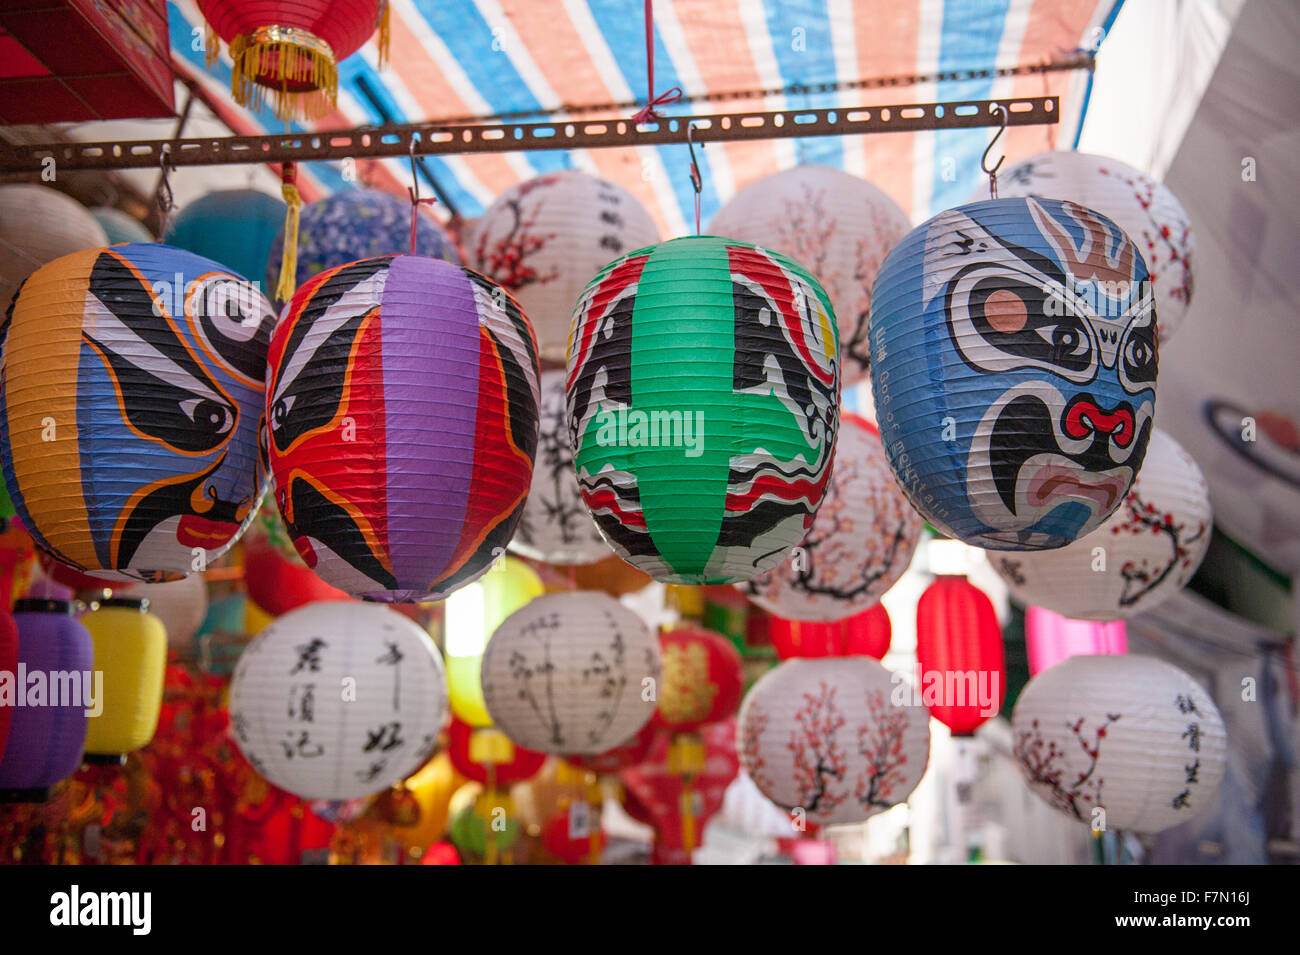 Chinesische Laternen hängen am Marktstand Stockfoto